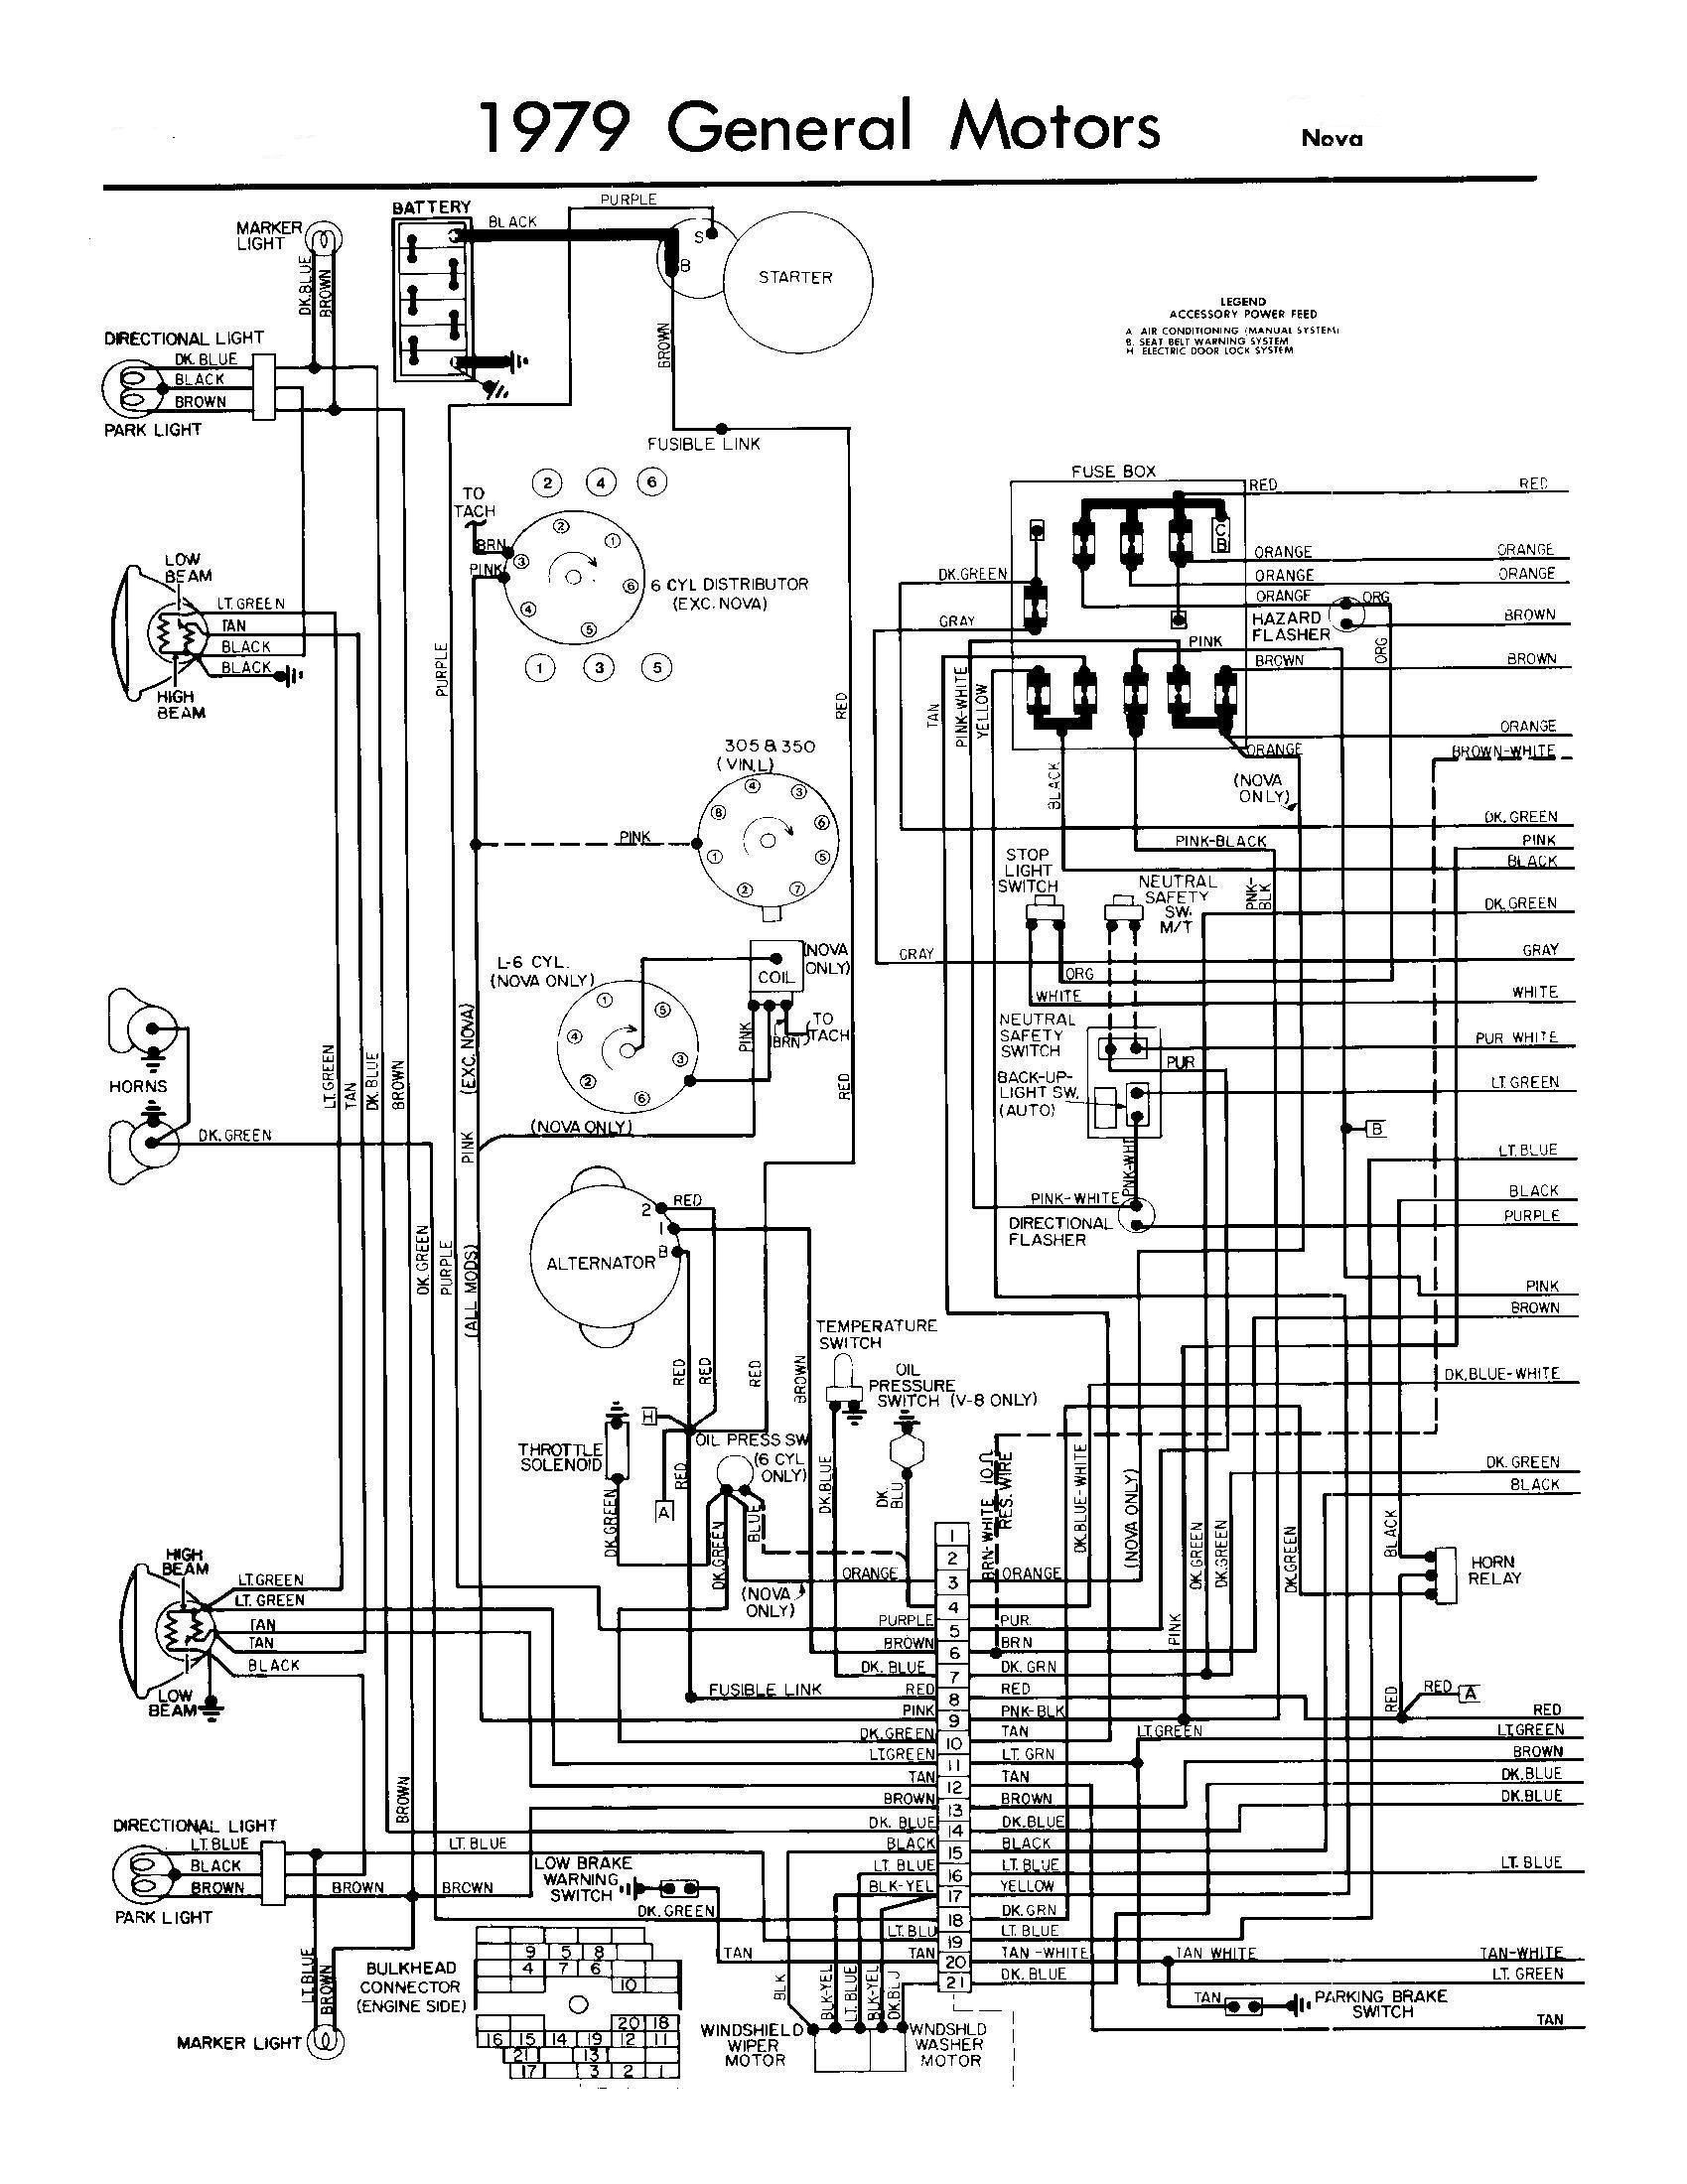 Chev.305 Engine Wiring Diagram Starter Wiring Diagram Chevy 350 – Electrical Wiring Diagram Images Of Chev.305 Engine Wiring Diagram